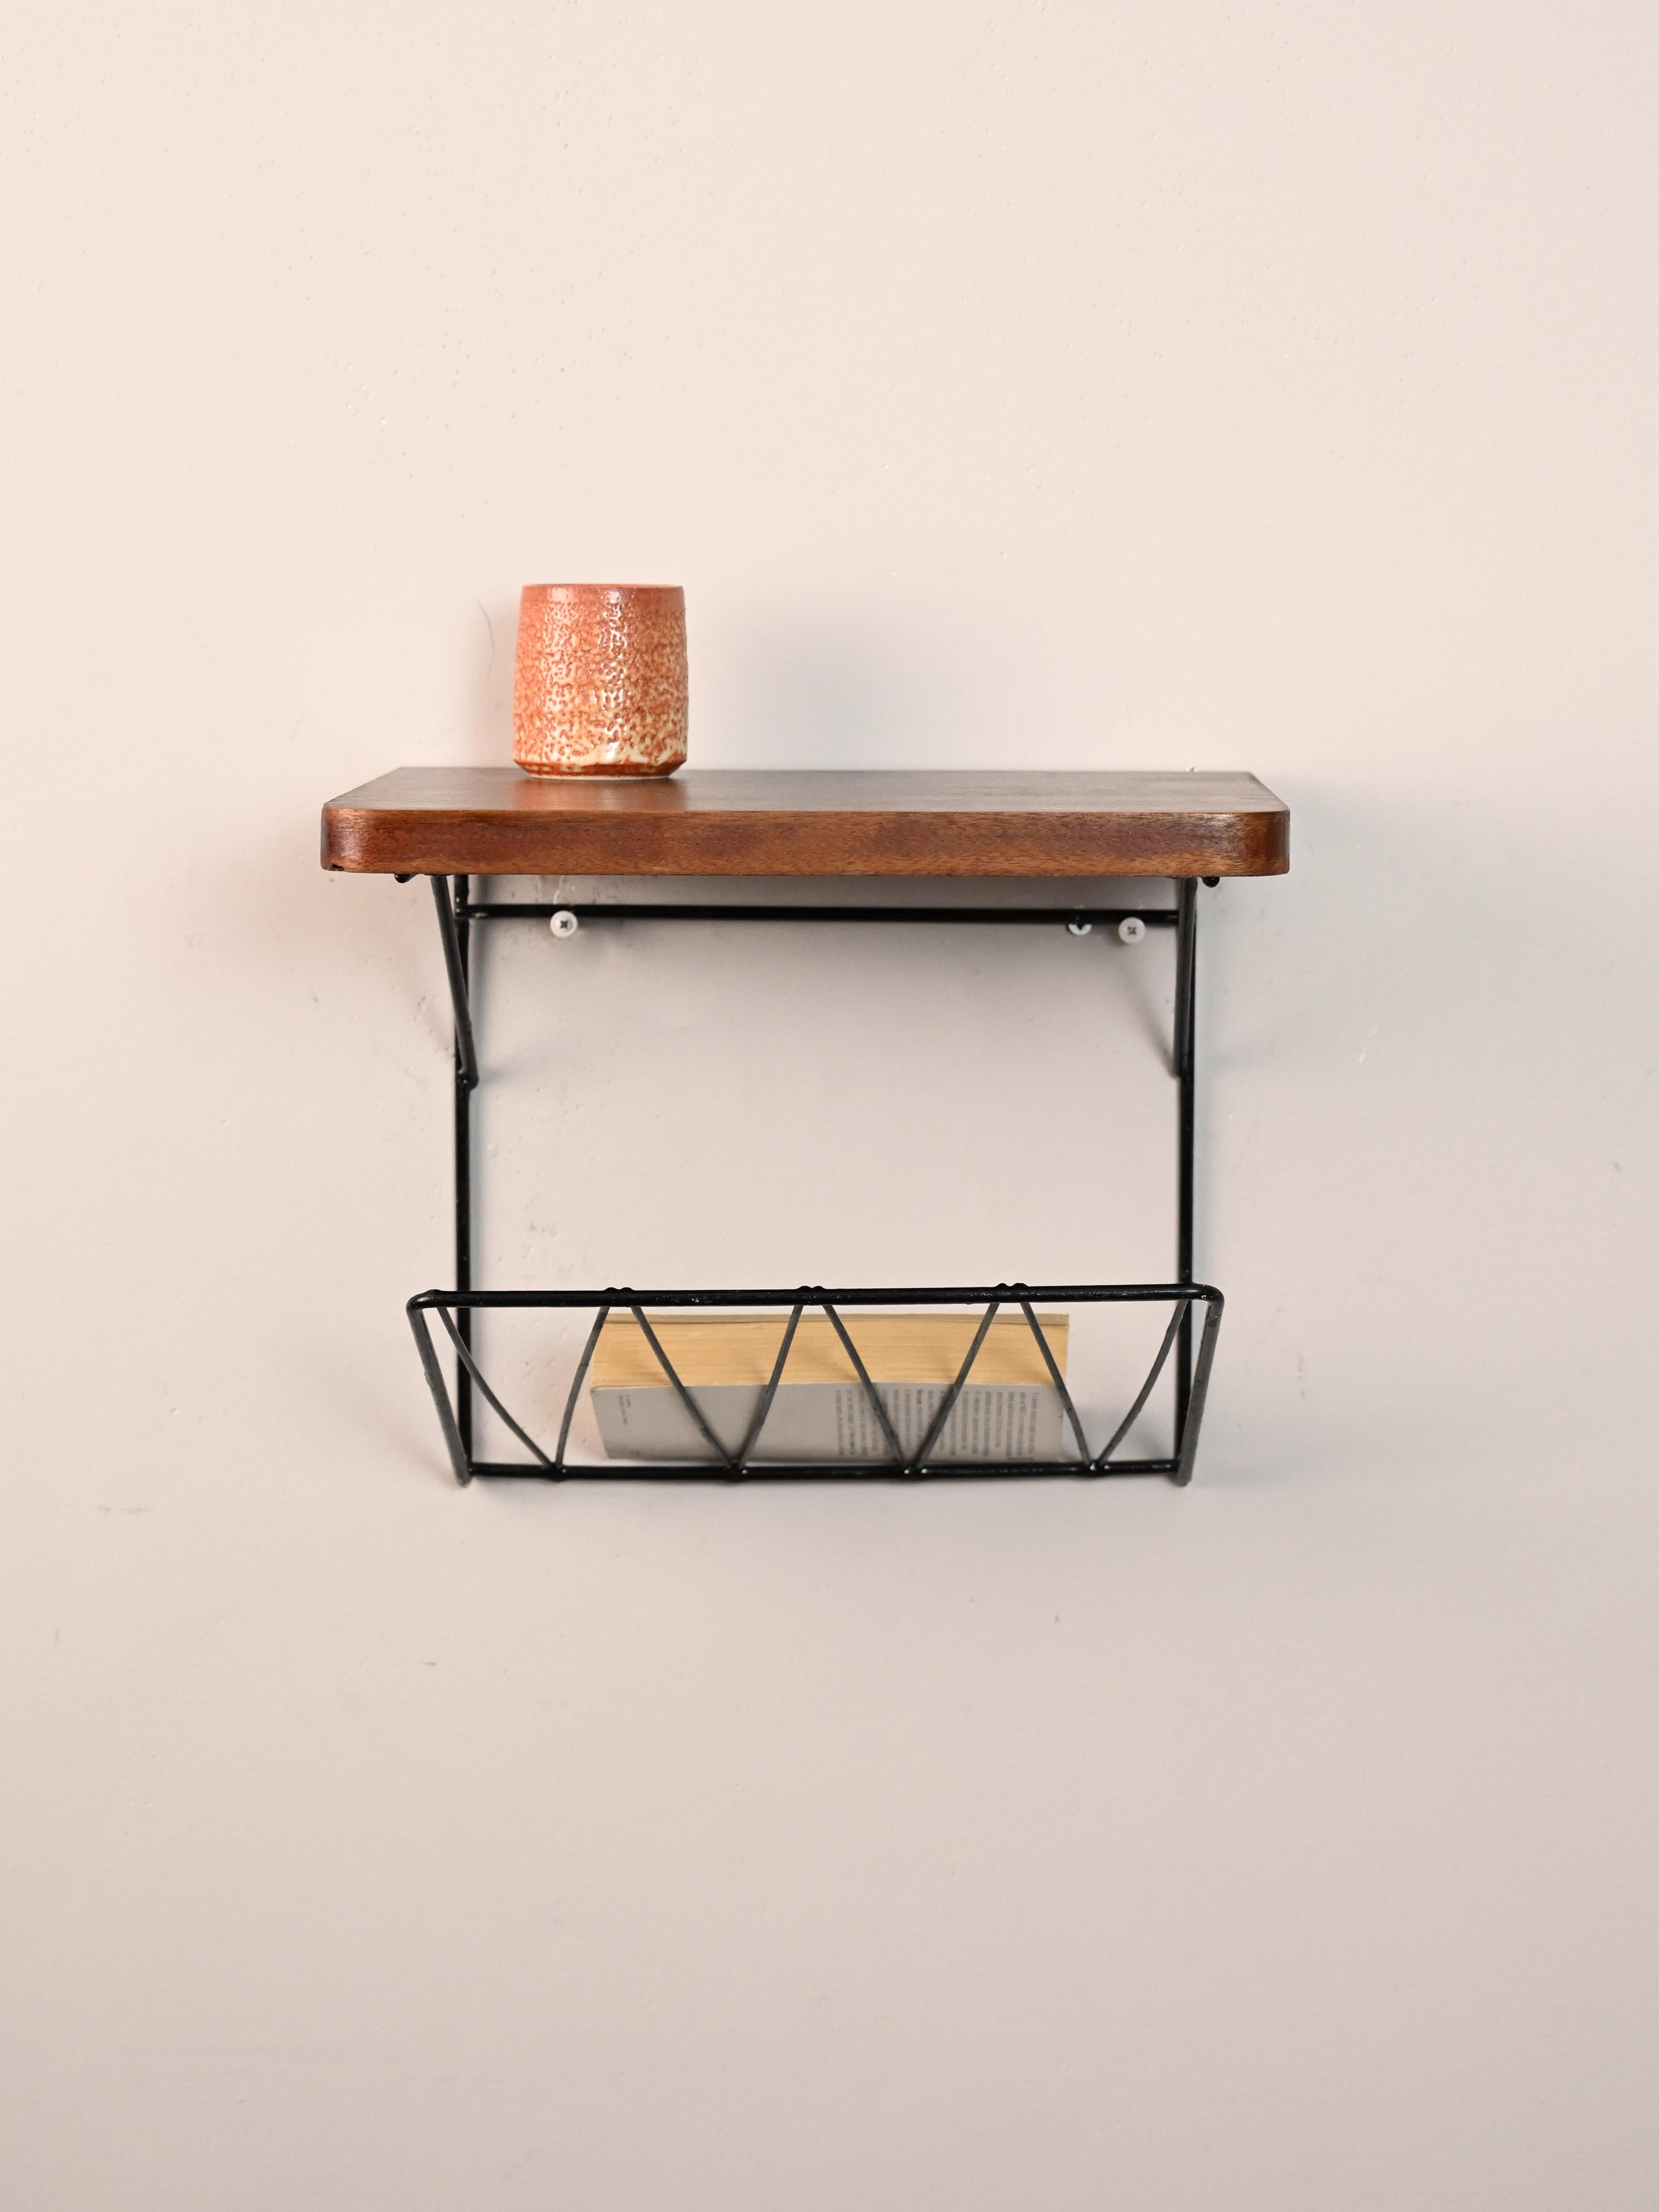 Skandinavischer originaler Vintage-Nachttisch zum Aufhängen.

Kleines skandinavisches Möbelstück, das als Telefonständer verwendet wird.
Besteht aus einem einfachen Holzregal mit abgerundeten Ecken und einem schwarzen Zeitschriftenständer aus